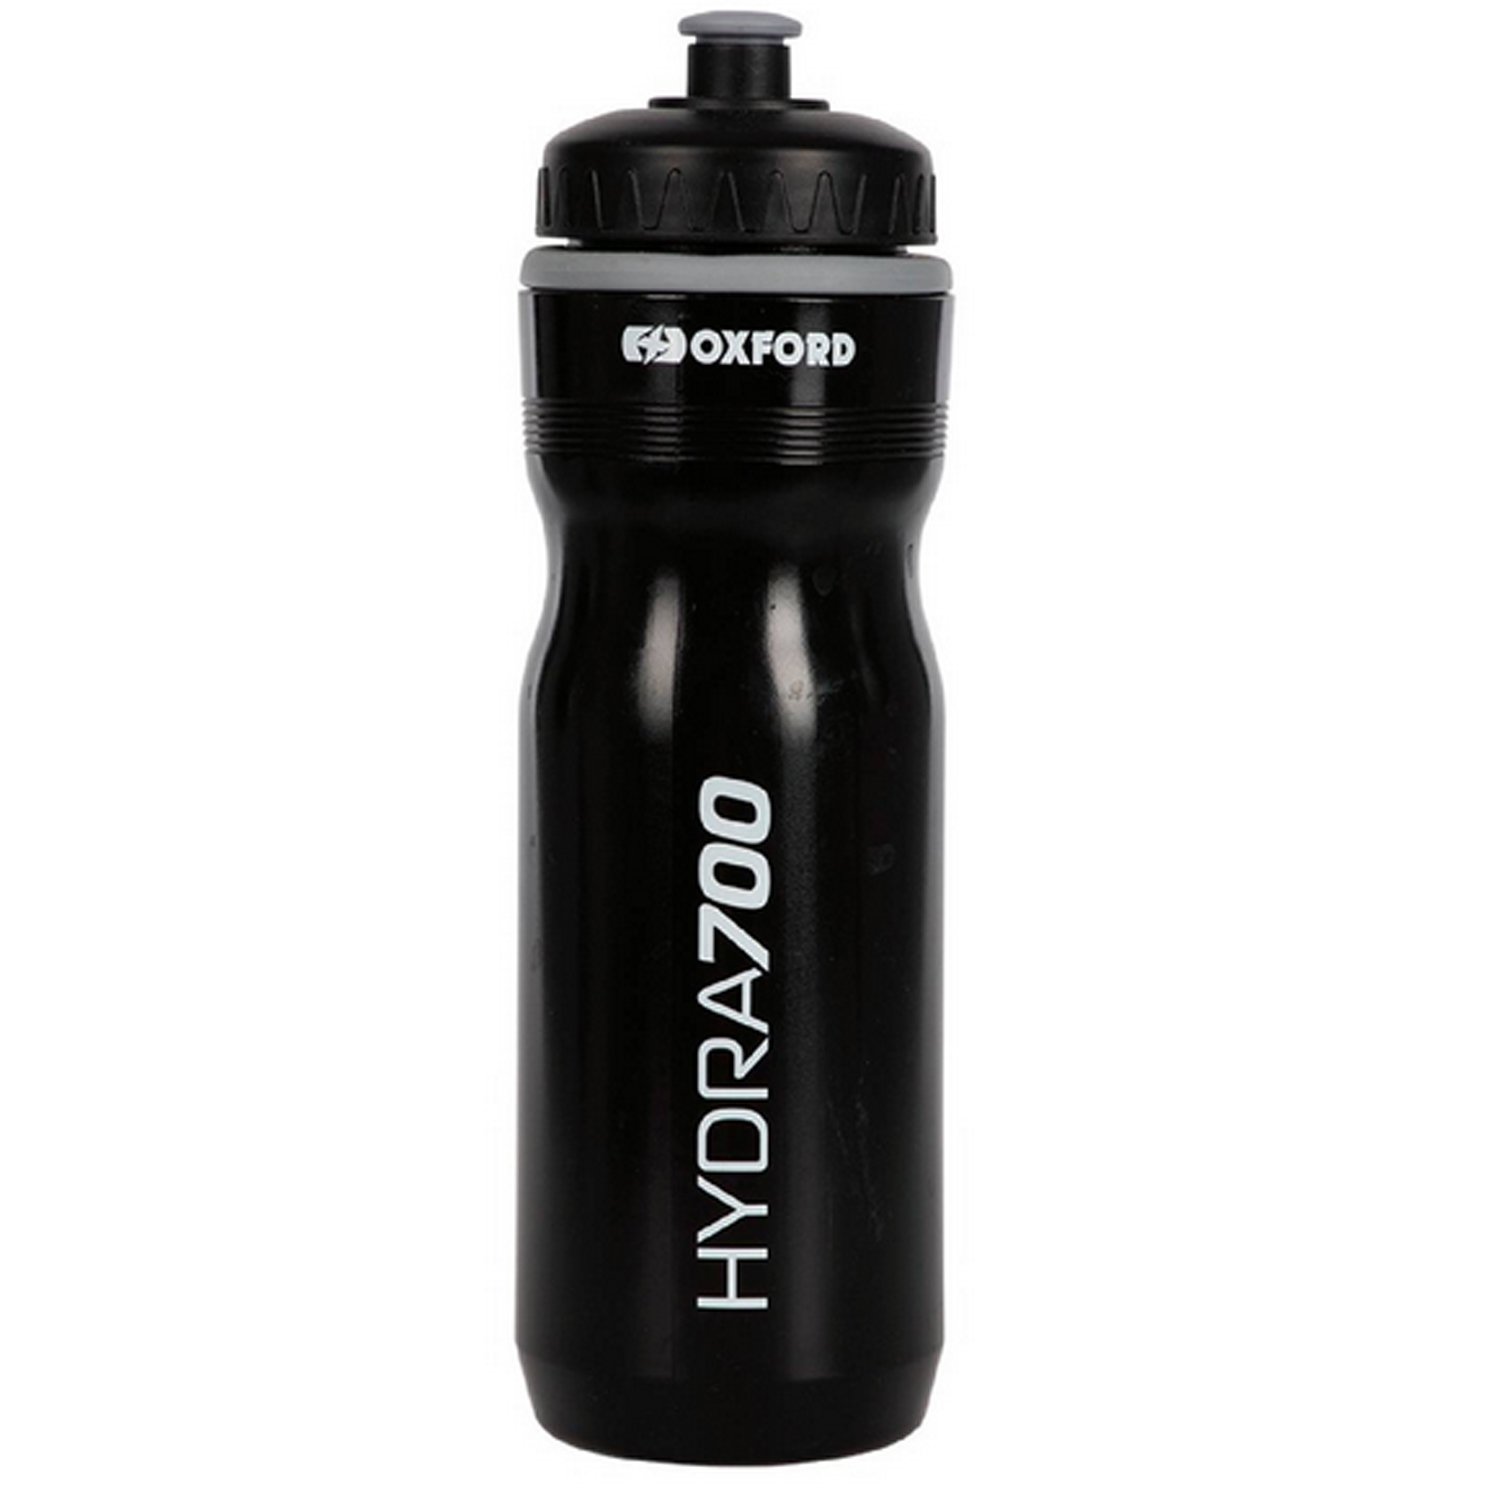 Фляга велосипедная Oxford Water Bottle Hydra, пластик, 700 мл, черный, 2023, BT152B держатель фляги clarks bc 23 поликарбонат высокопрочный и легкий фляга вкладывается сбоку 3 440